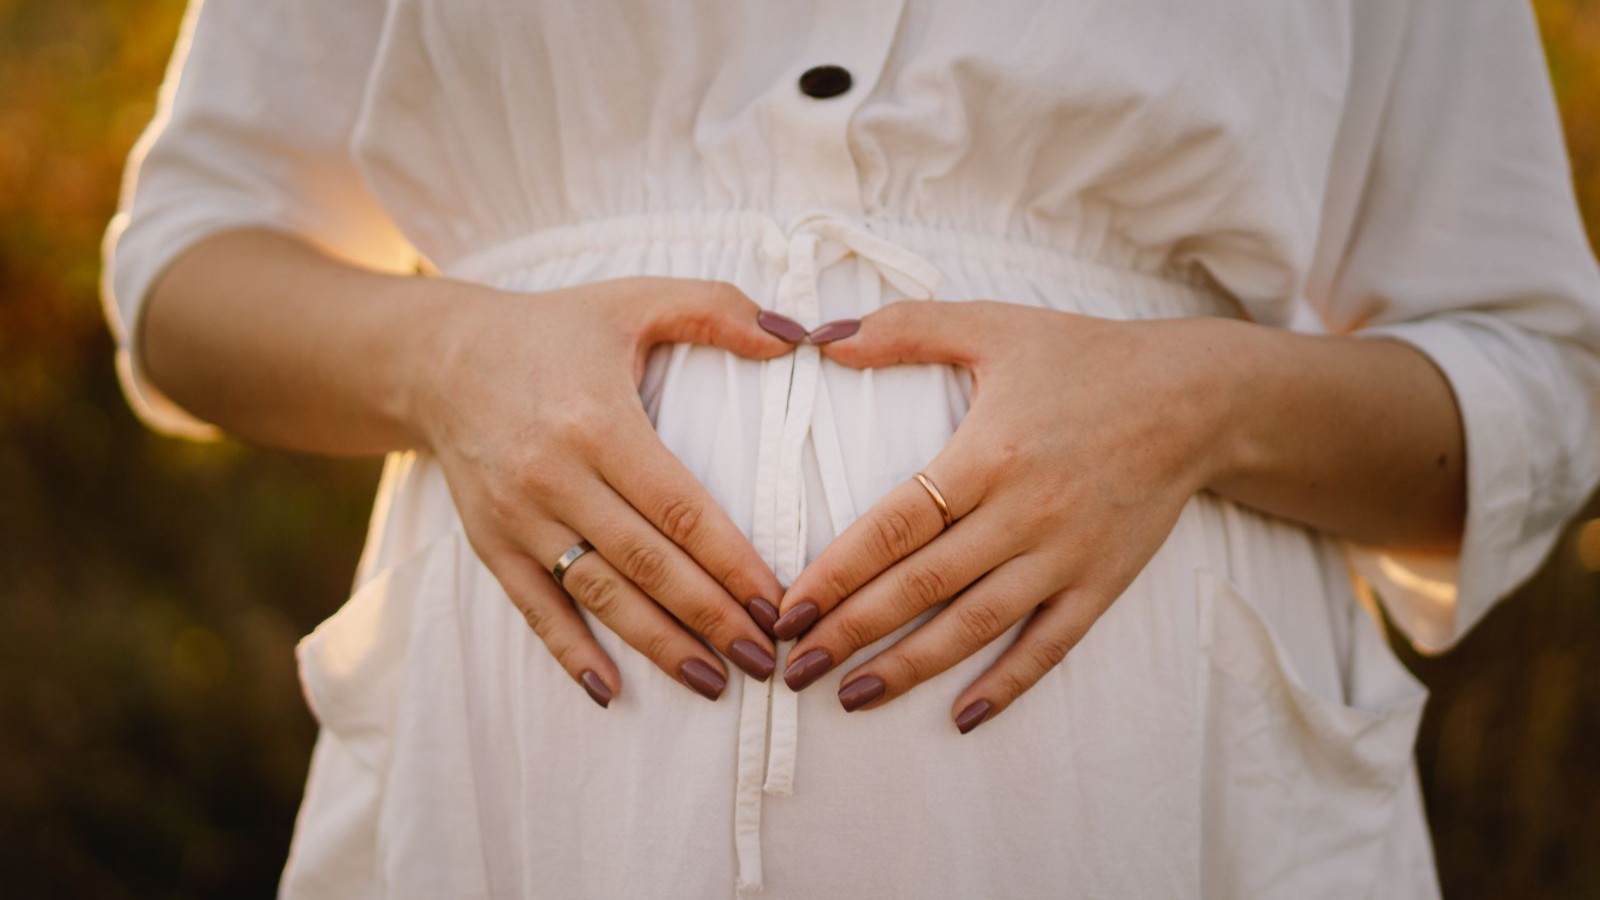 هل بإمكان التوتر المفرط أن يسبب الإجهاض المبكر؟